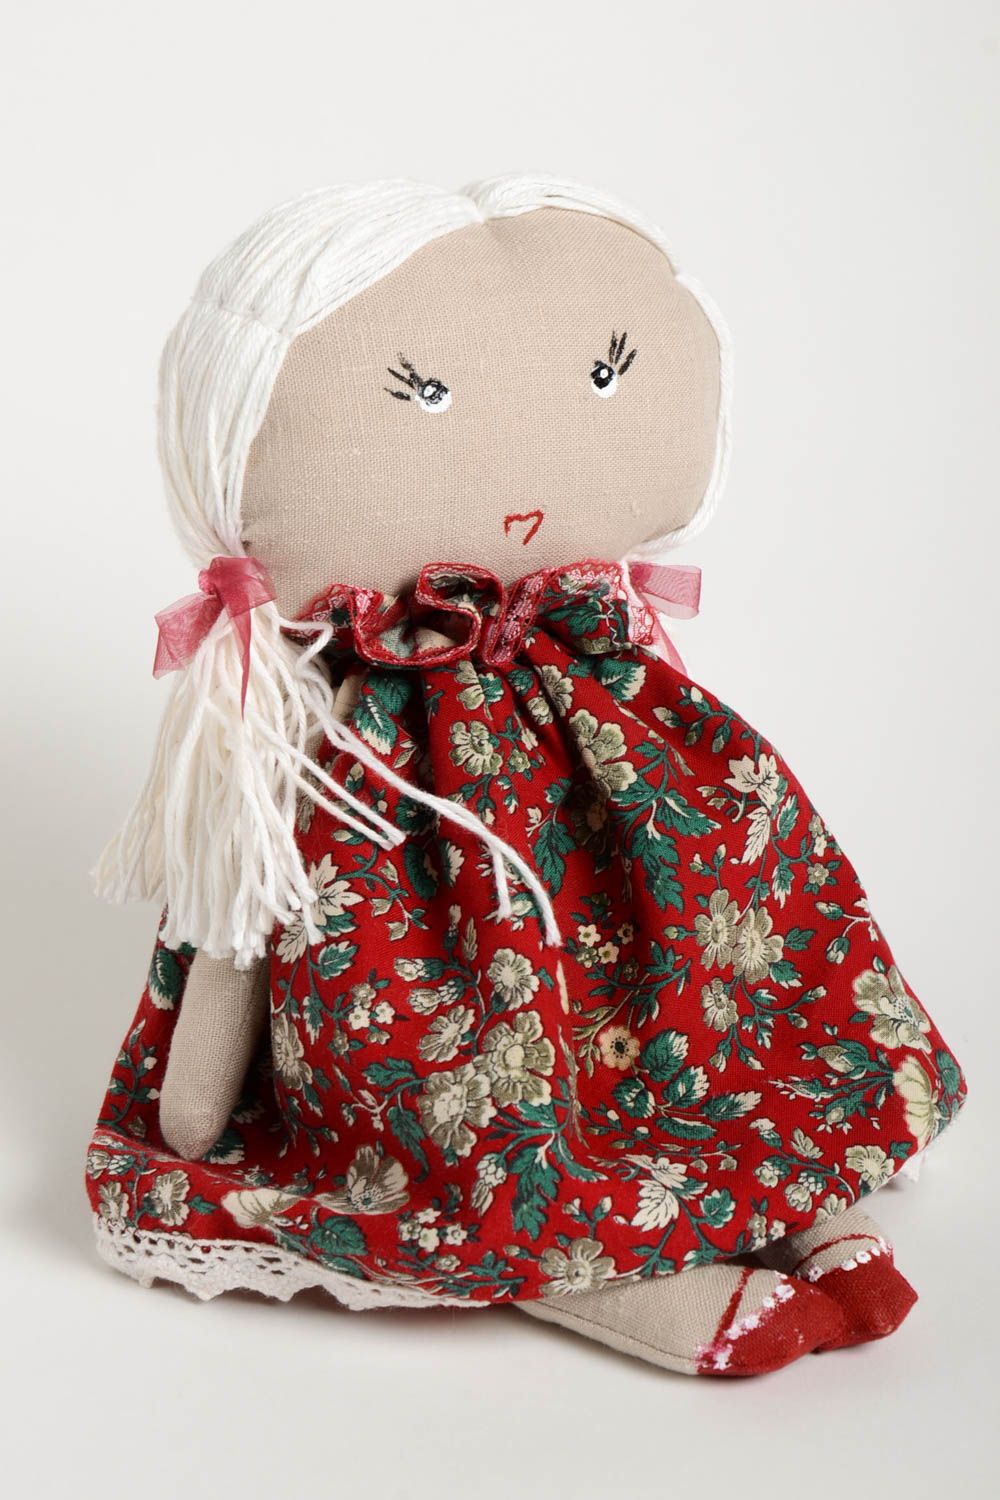 Кукла ручной работы кукла из ткани красивая авторская кукла девочка красивая фото 2